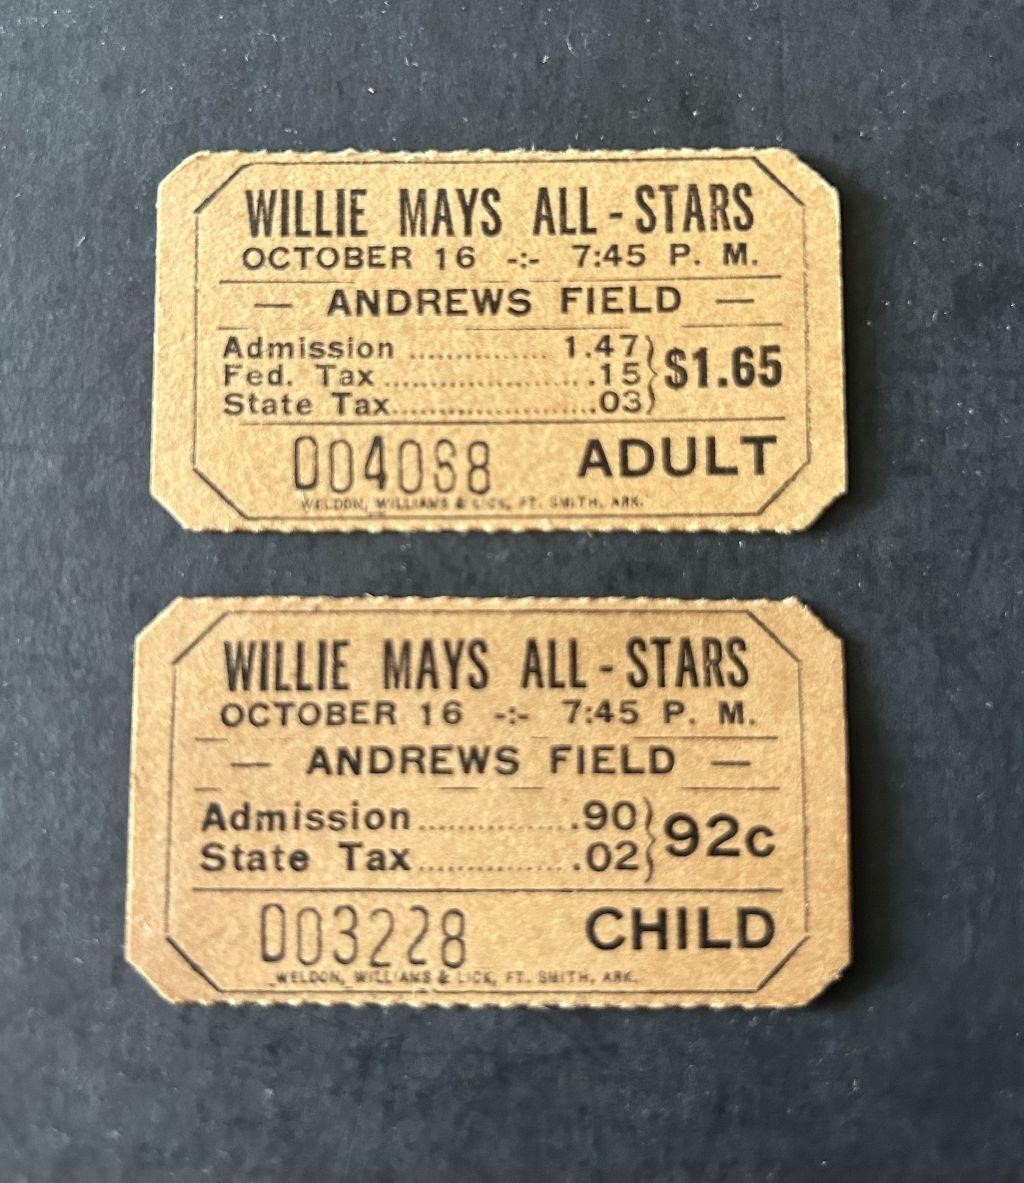 Vintage Sports Card Auction - Ends MON 5/20 9PM CST